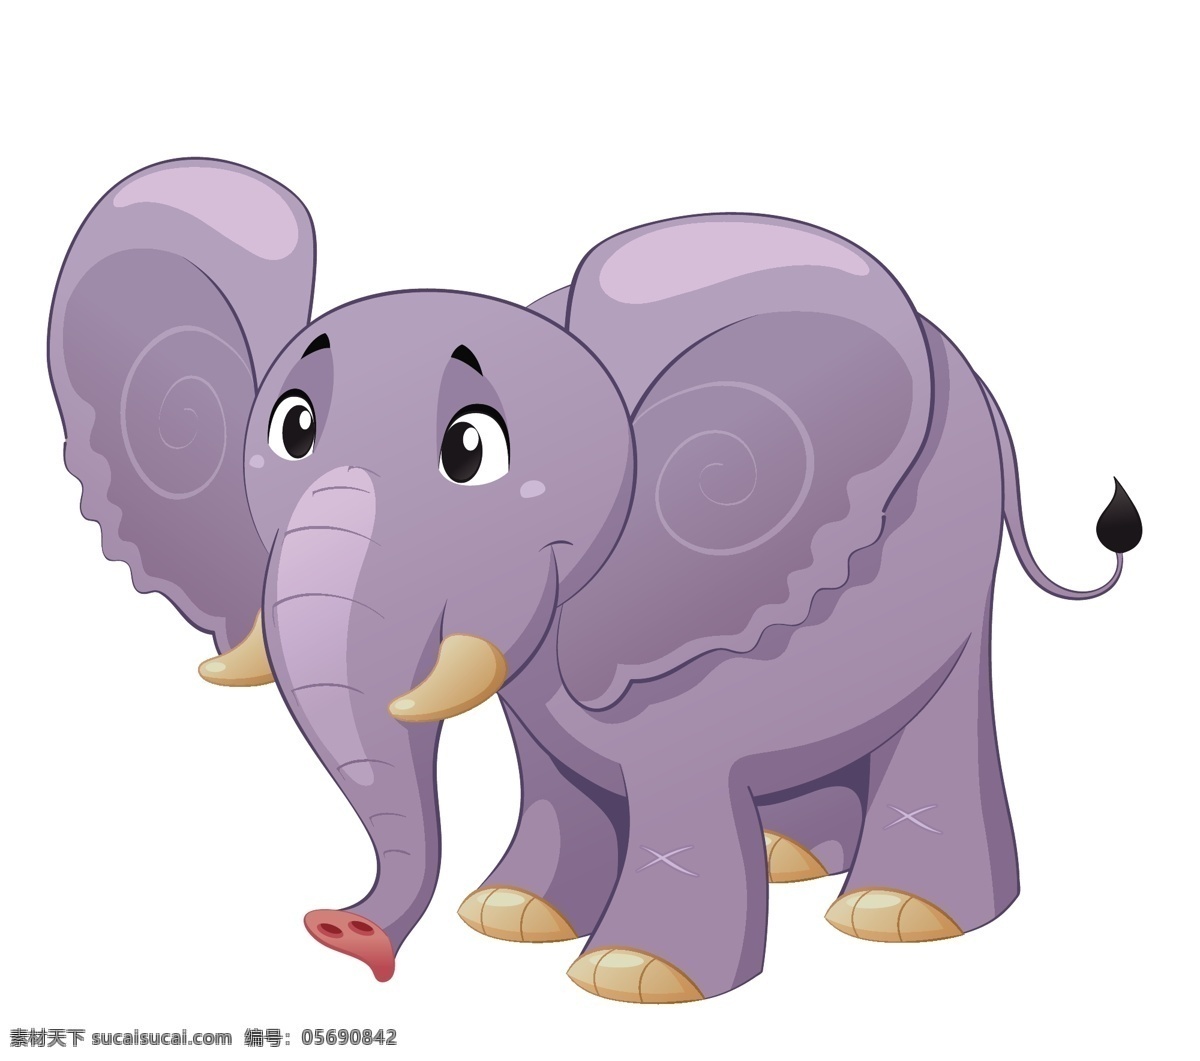 矢量 卡通 大象 可爱 动物 矢量图 矢量下载 网页矢量 商业矢量 矢量人物